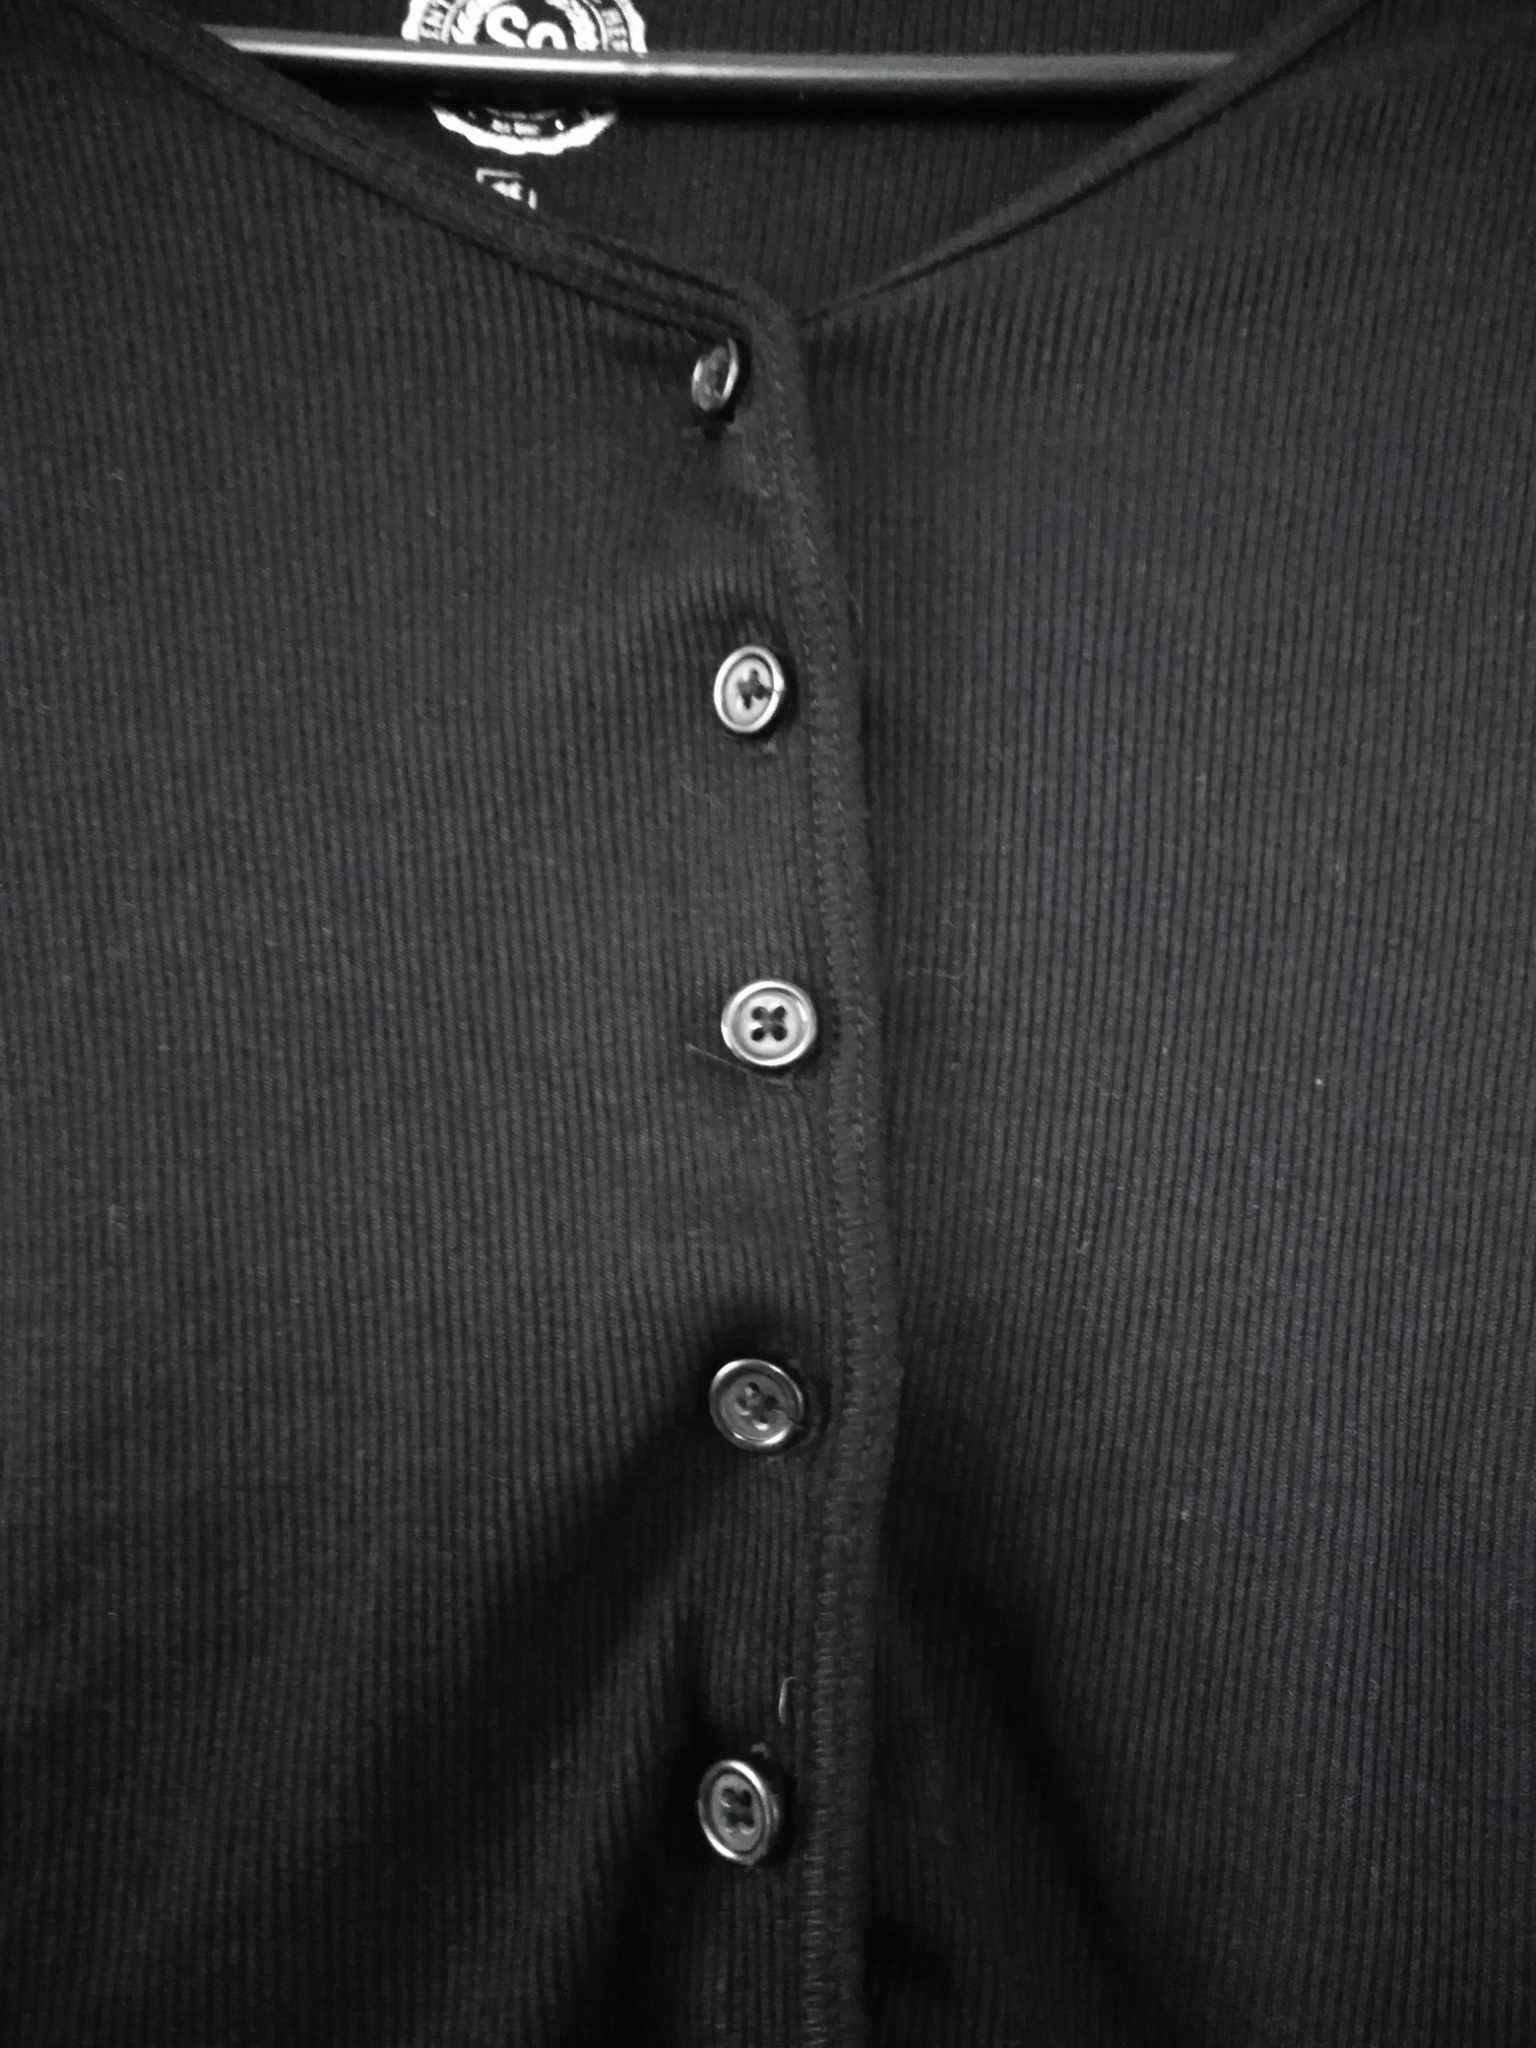 Damski czarny cienki czarny swetr w rozmiarze xl 42